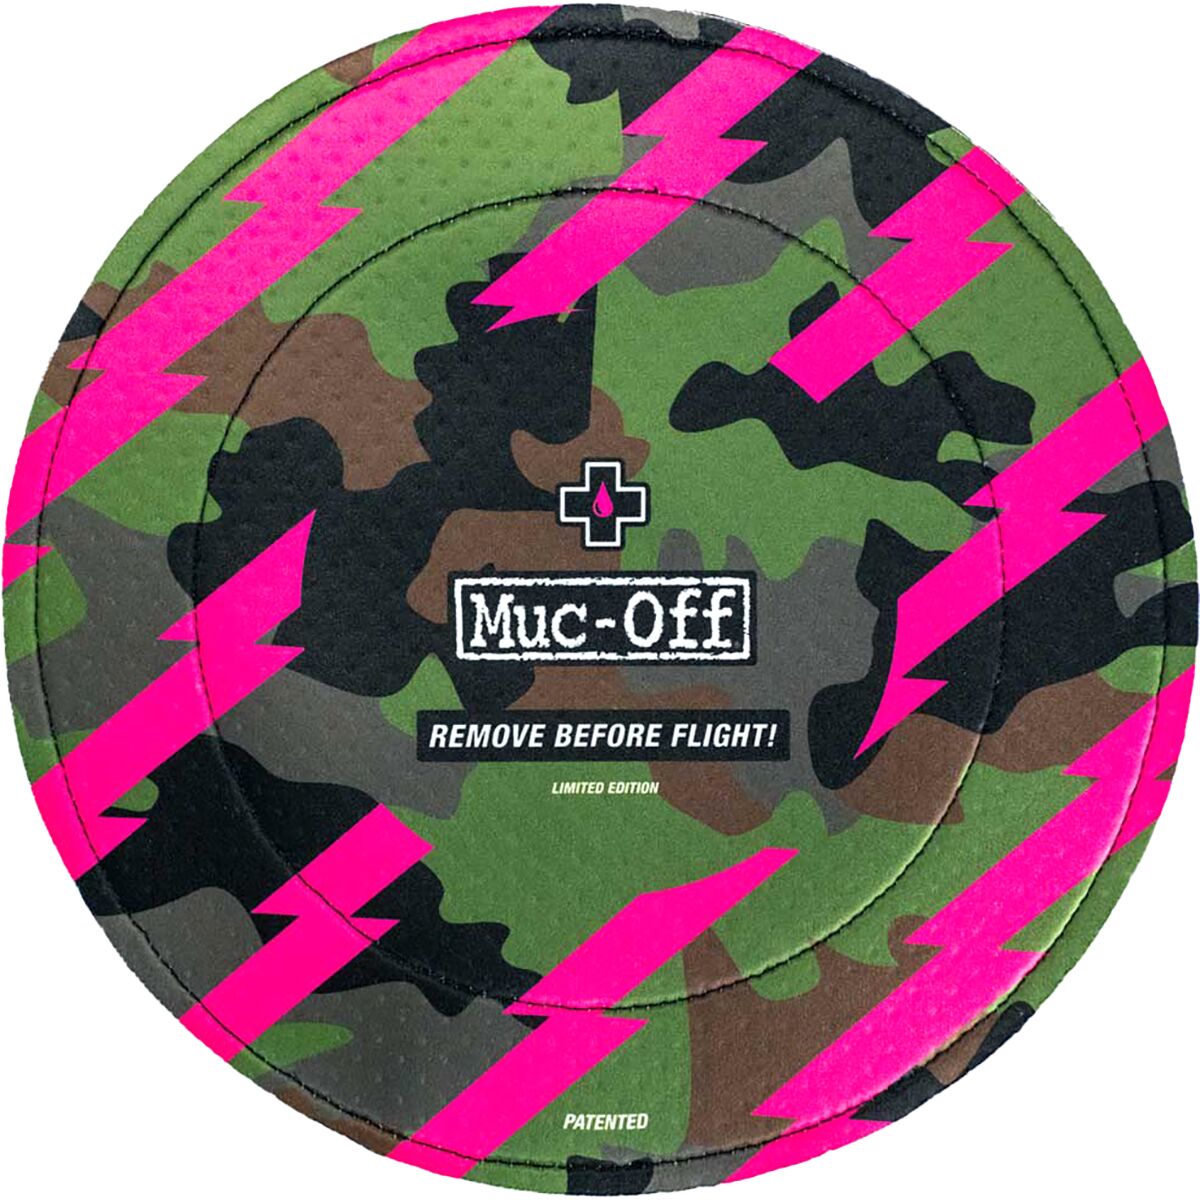 Muc-Off Disc Brake Cover